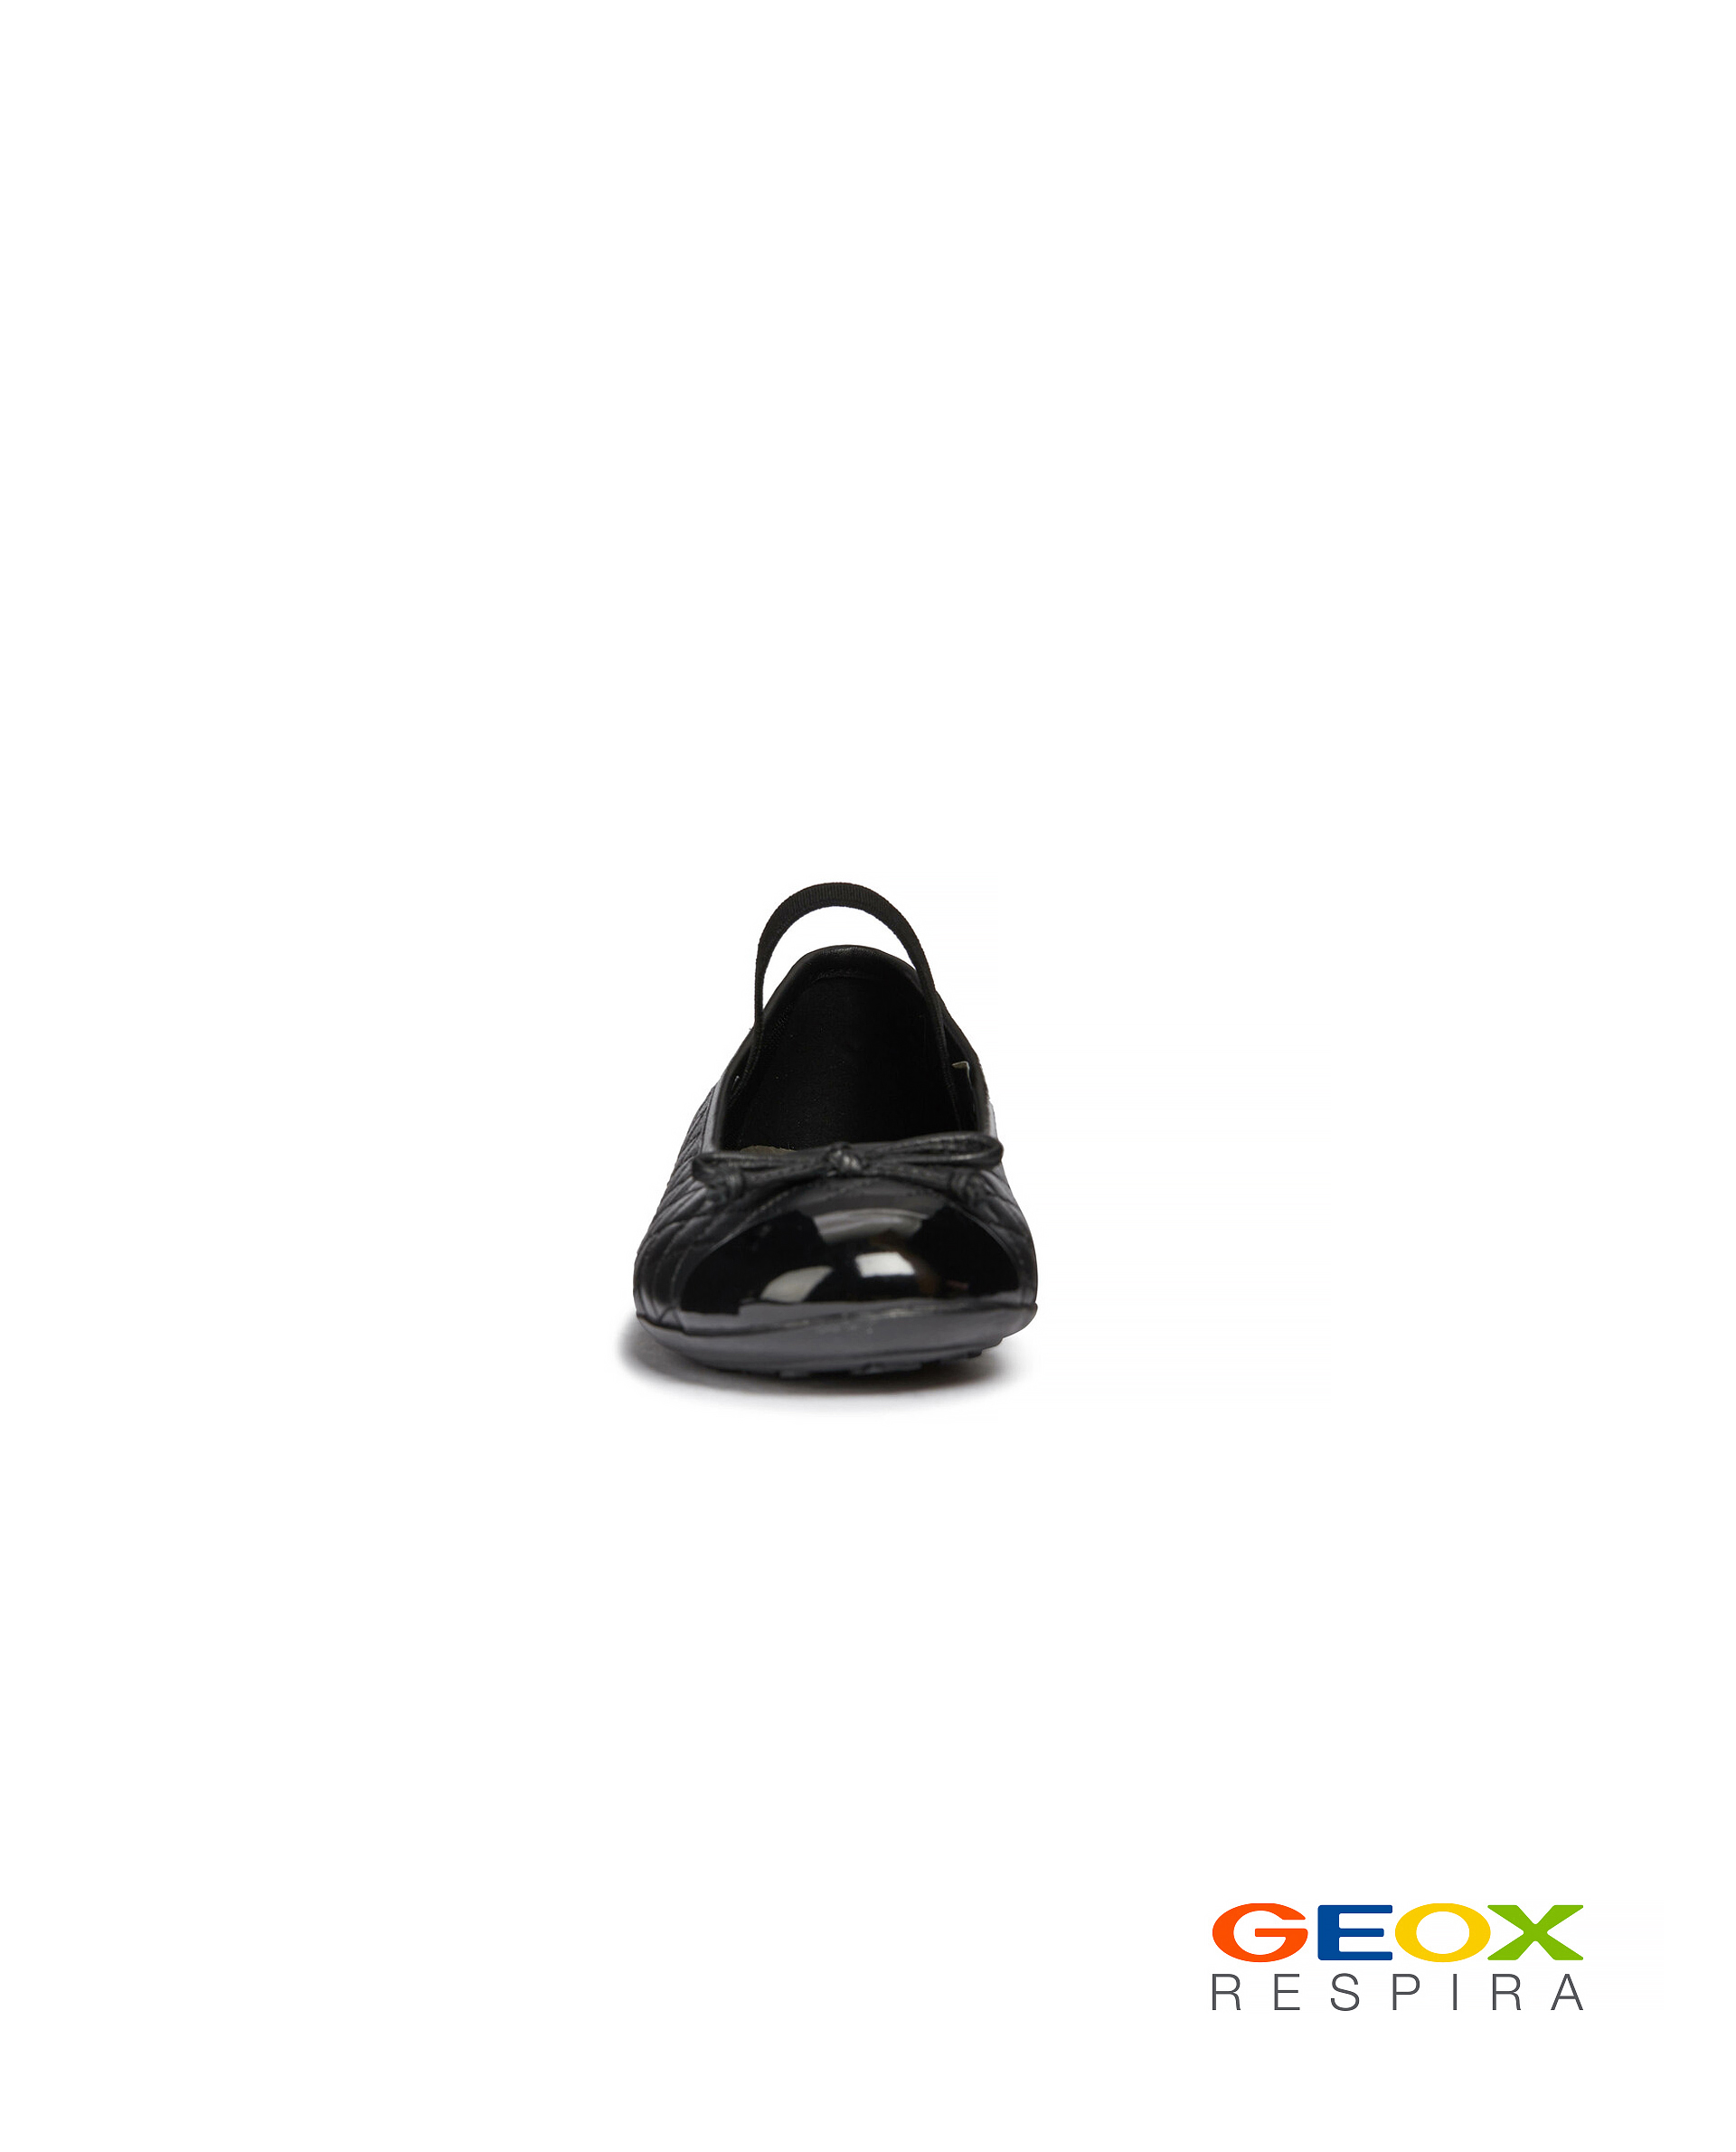 Черные балетки Geox 219GSGS0001, размер 36, цвет черный - фото 3